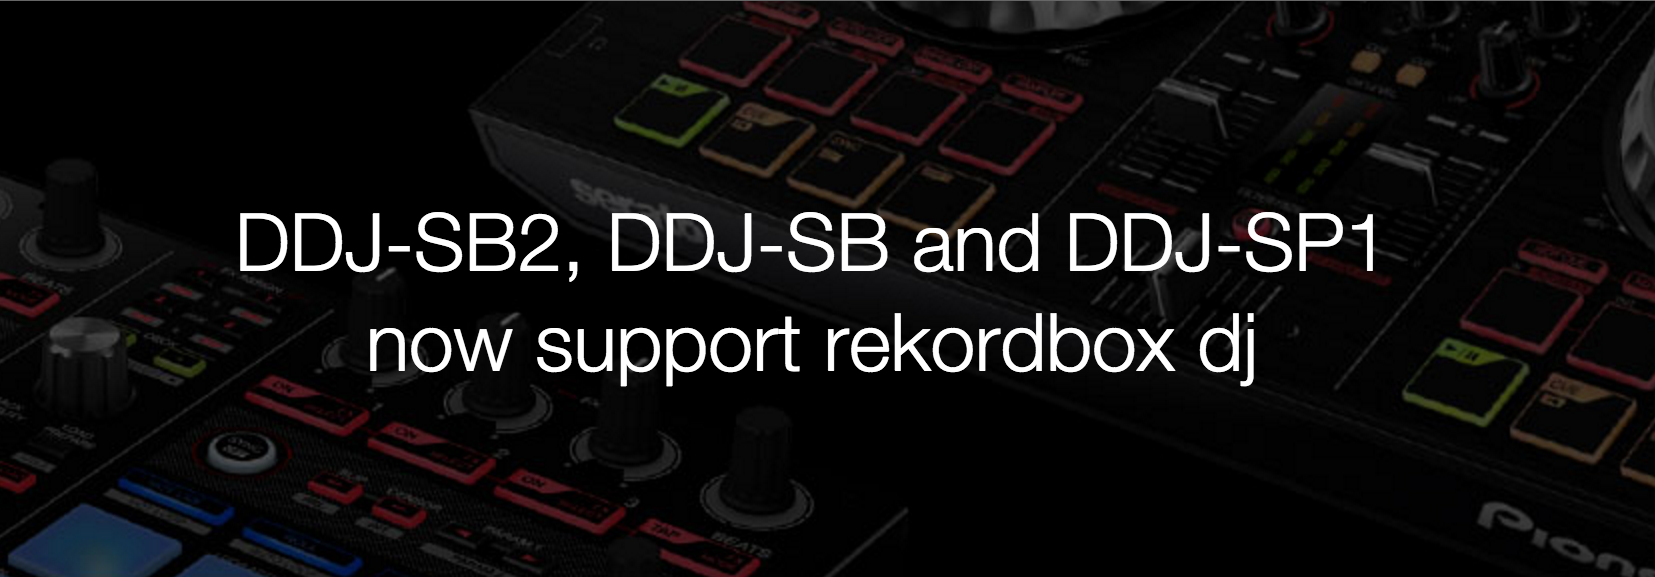 Ya disponible la actualización Rekordbox DJ 4.0.8